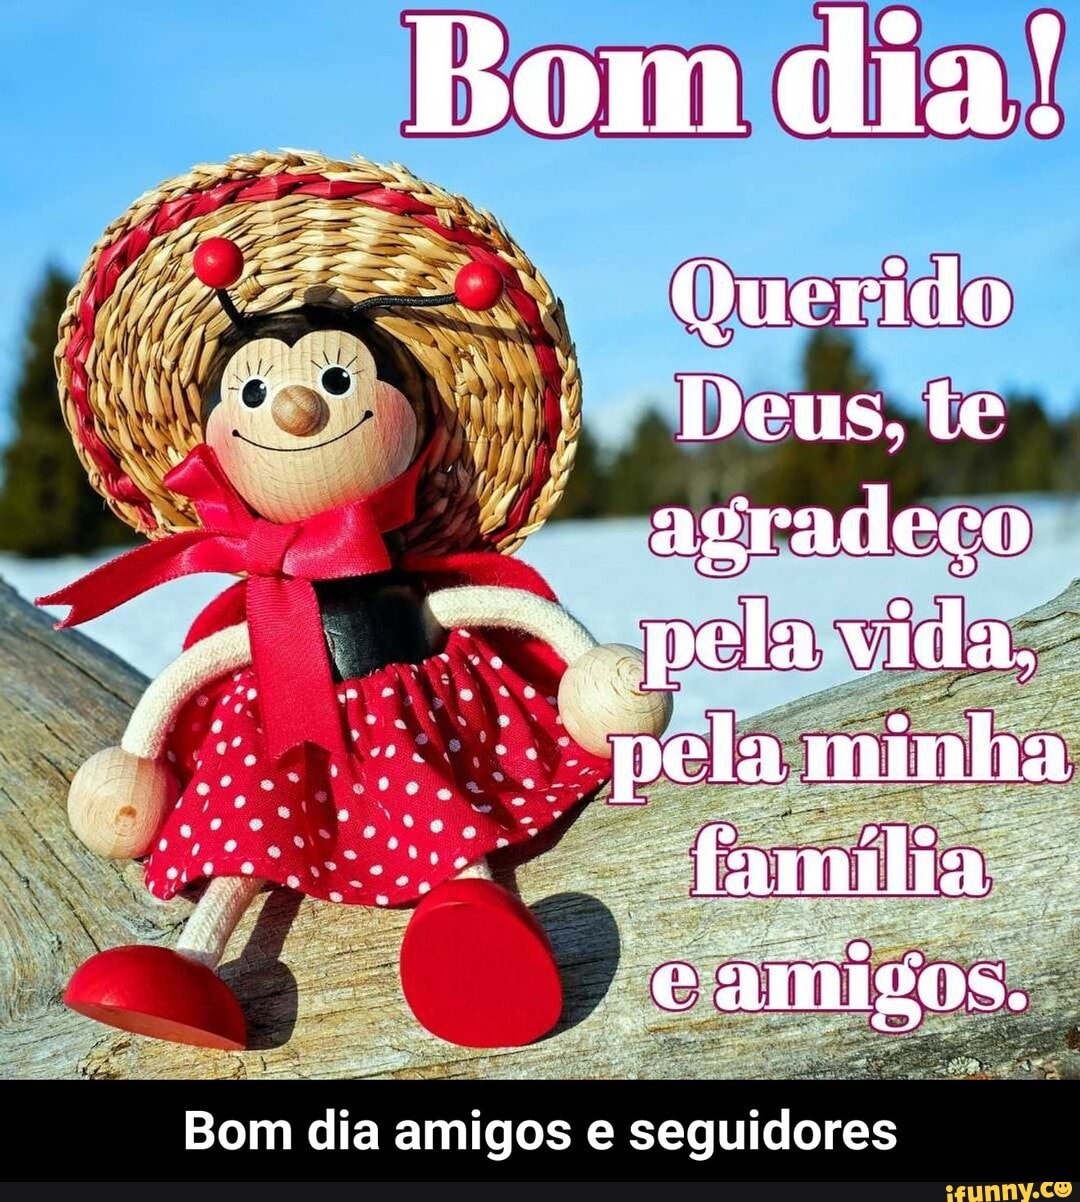 Bom dia! Querido Deus. te agradeço pela vida, família. camigos. Bom dia  amigos e seguidores - Bom dia amigos e seguidores - iFunny Brazil